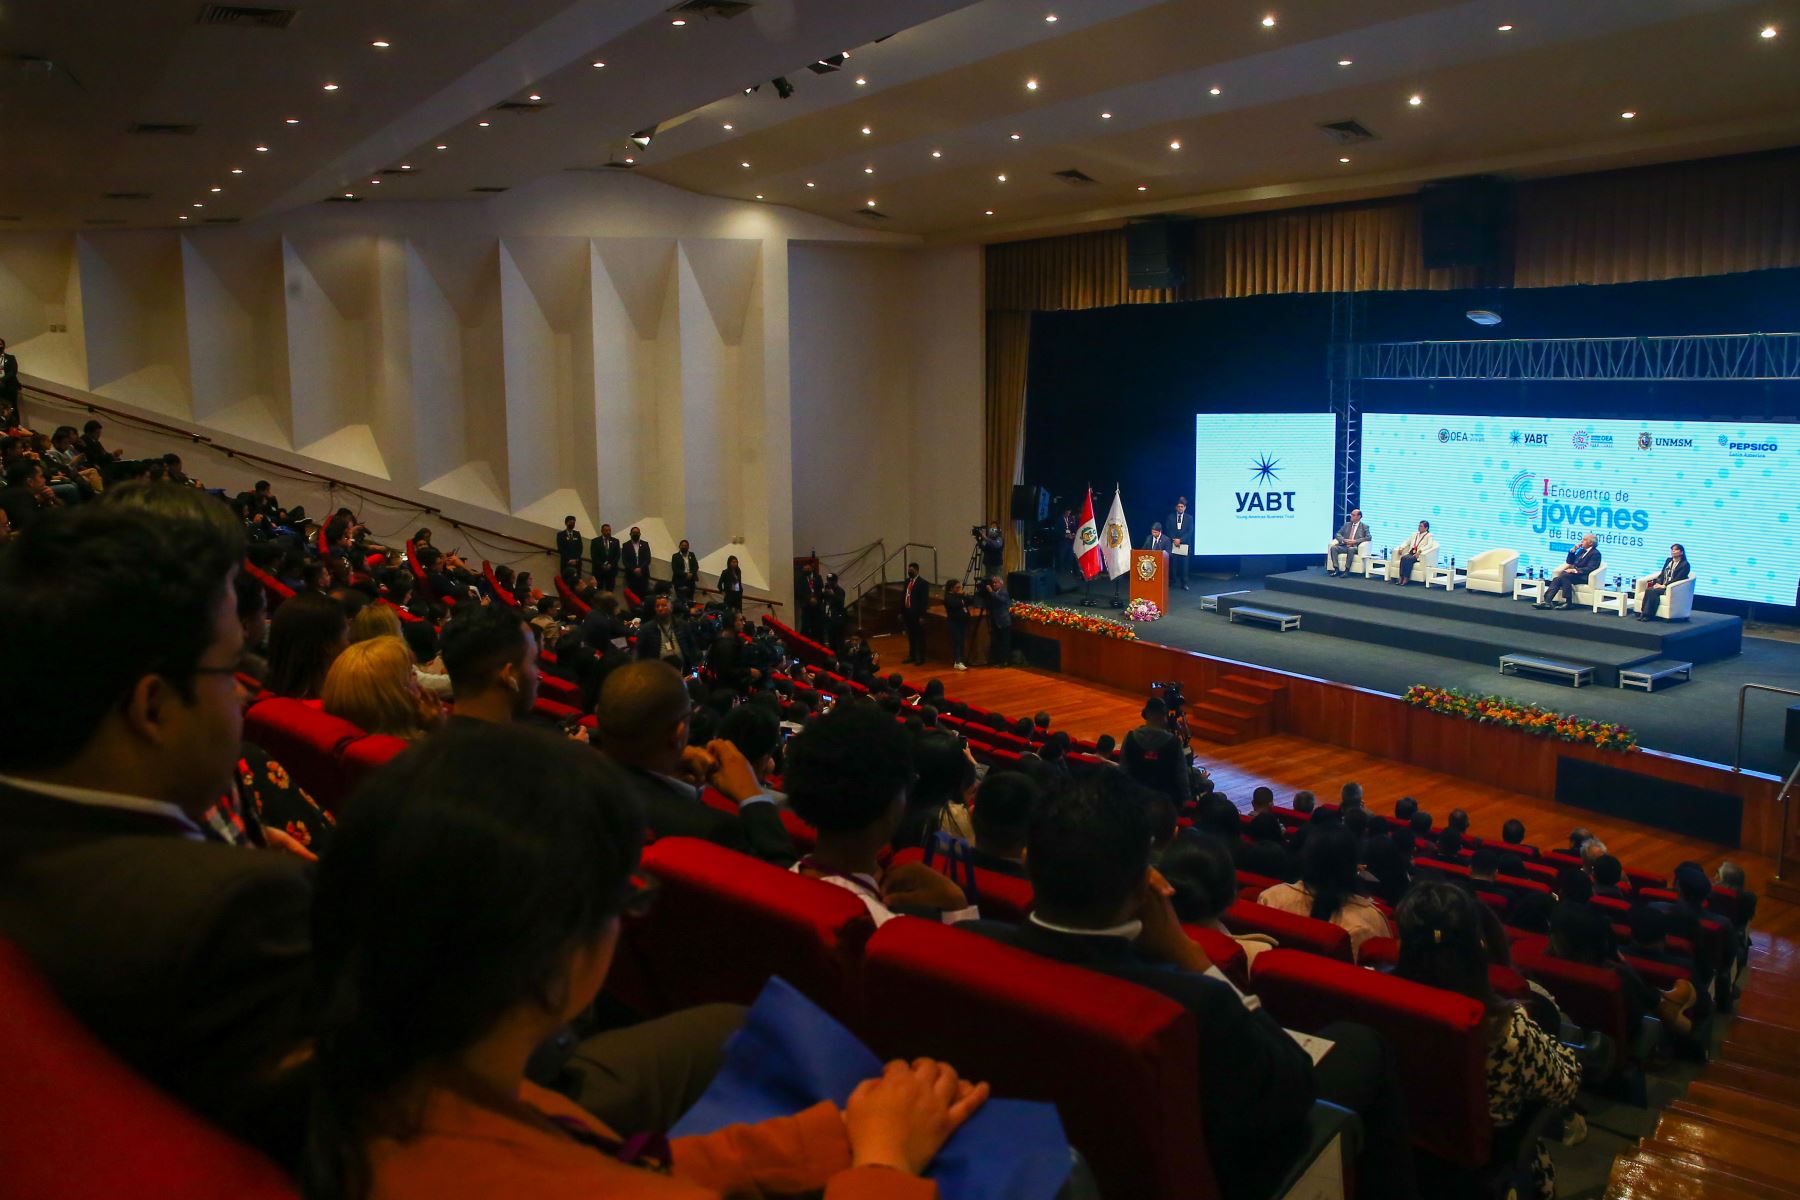 El presidente de la República, Pedro Castillo Terrones, inauguró el I Encuentro de Jóvenes de las Américas: Perú 2022, que congrega a más de 400 jóvenes, en el marco de la próxima apertura de la 52° Asamblea General de la OEA. Foto: ANDINA/Prensa Presidencia